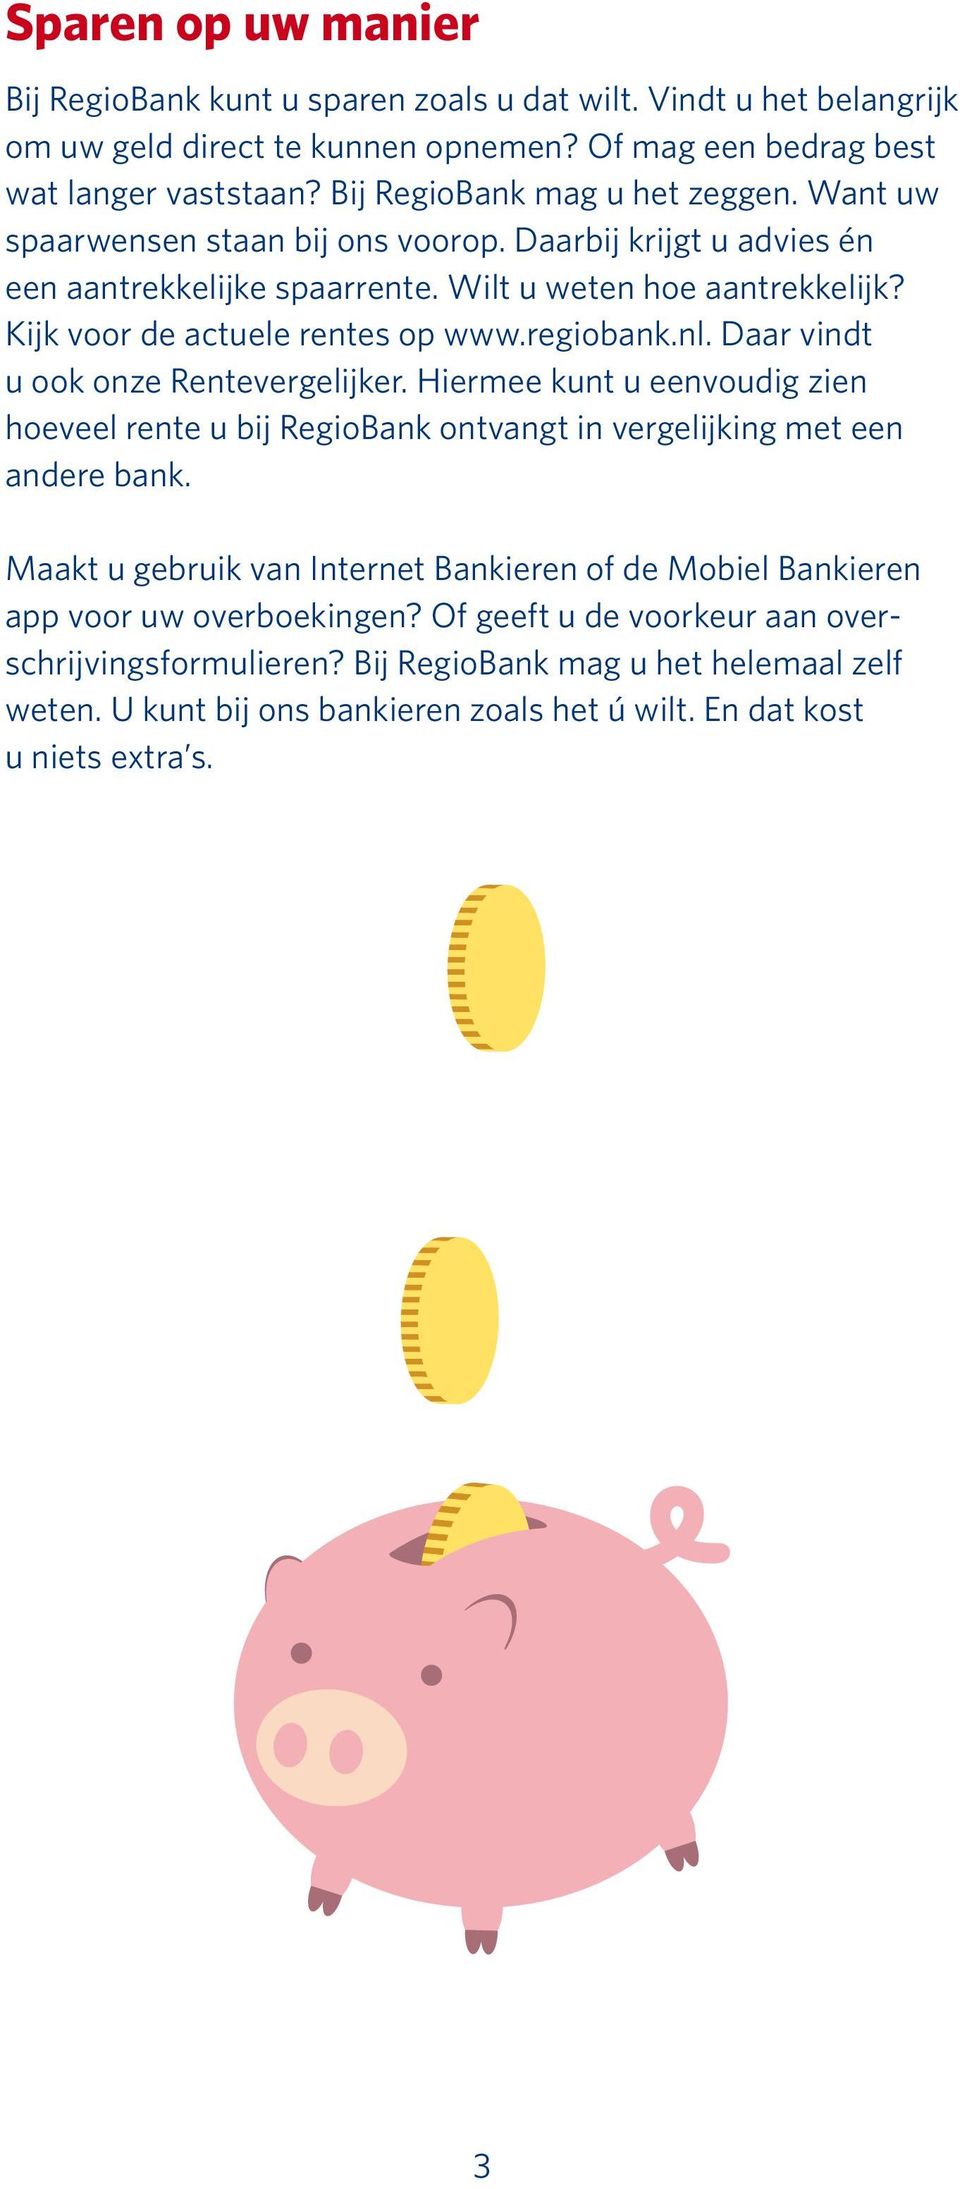 Kijk voor de actuele rentes op www.regiobank.nl. Daar vindt u ook onze Rentevergelijker. Hiermee kunt u eenvoudig zien hoeveel rente u bij RegioBank ontvangt in vergelijking met een andere bank.